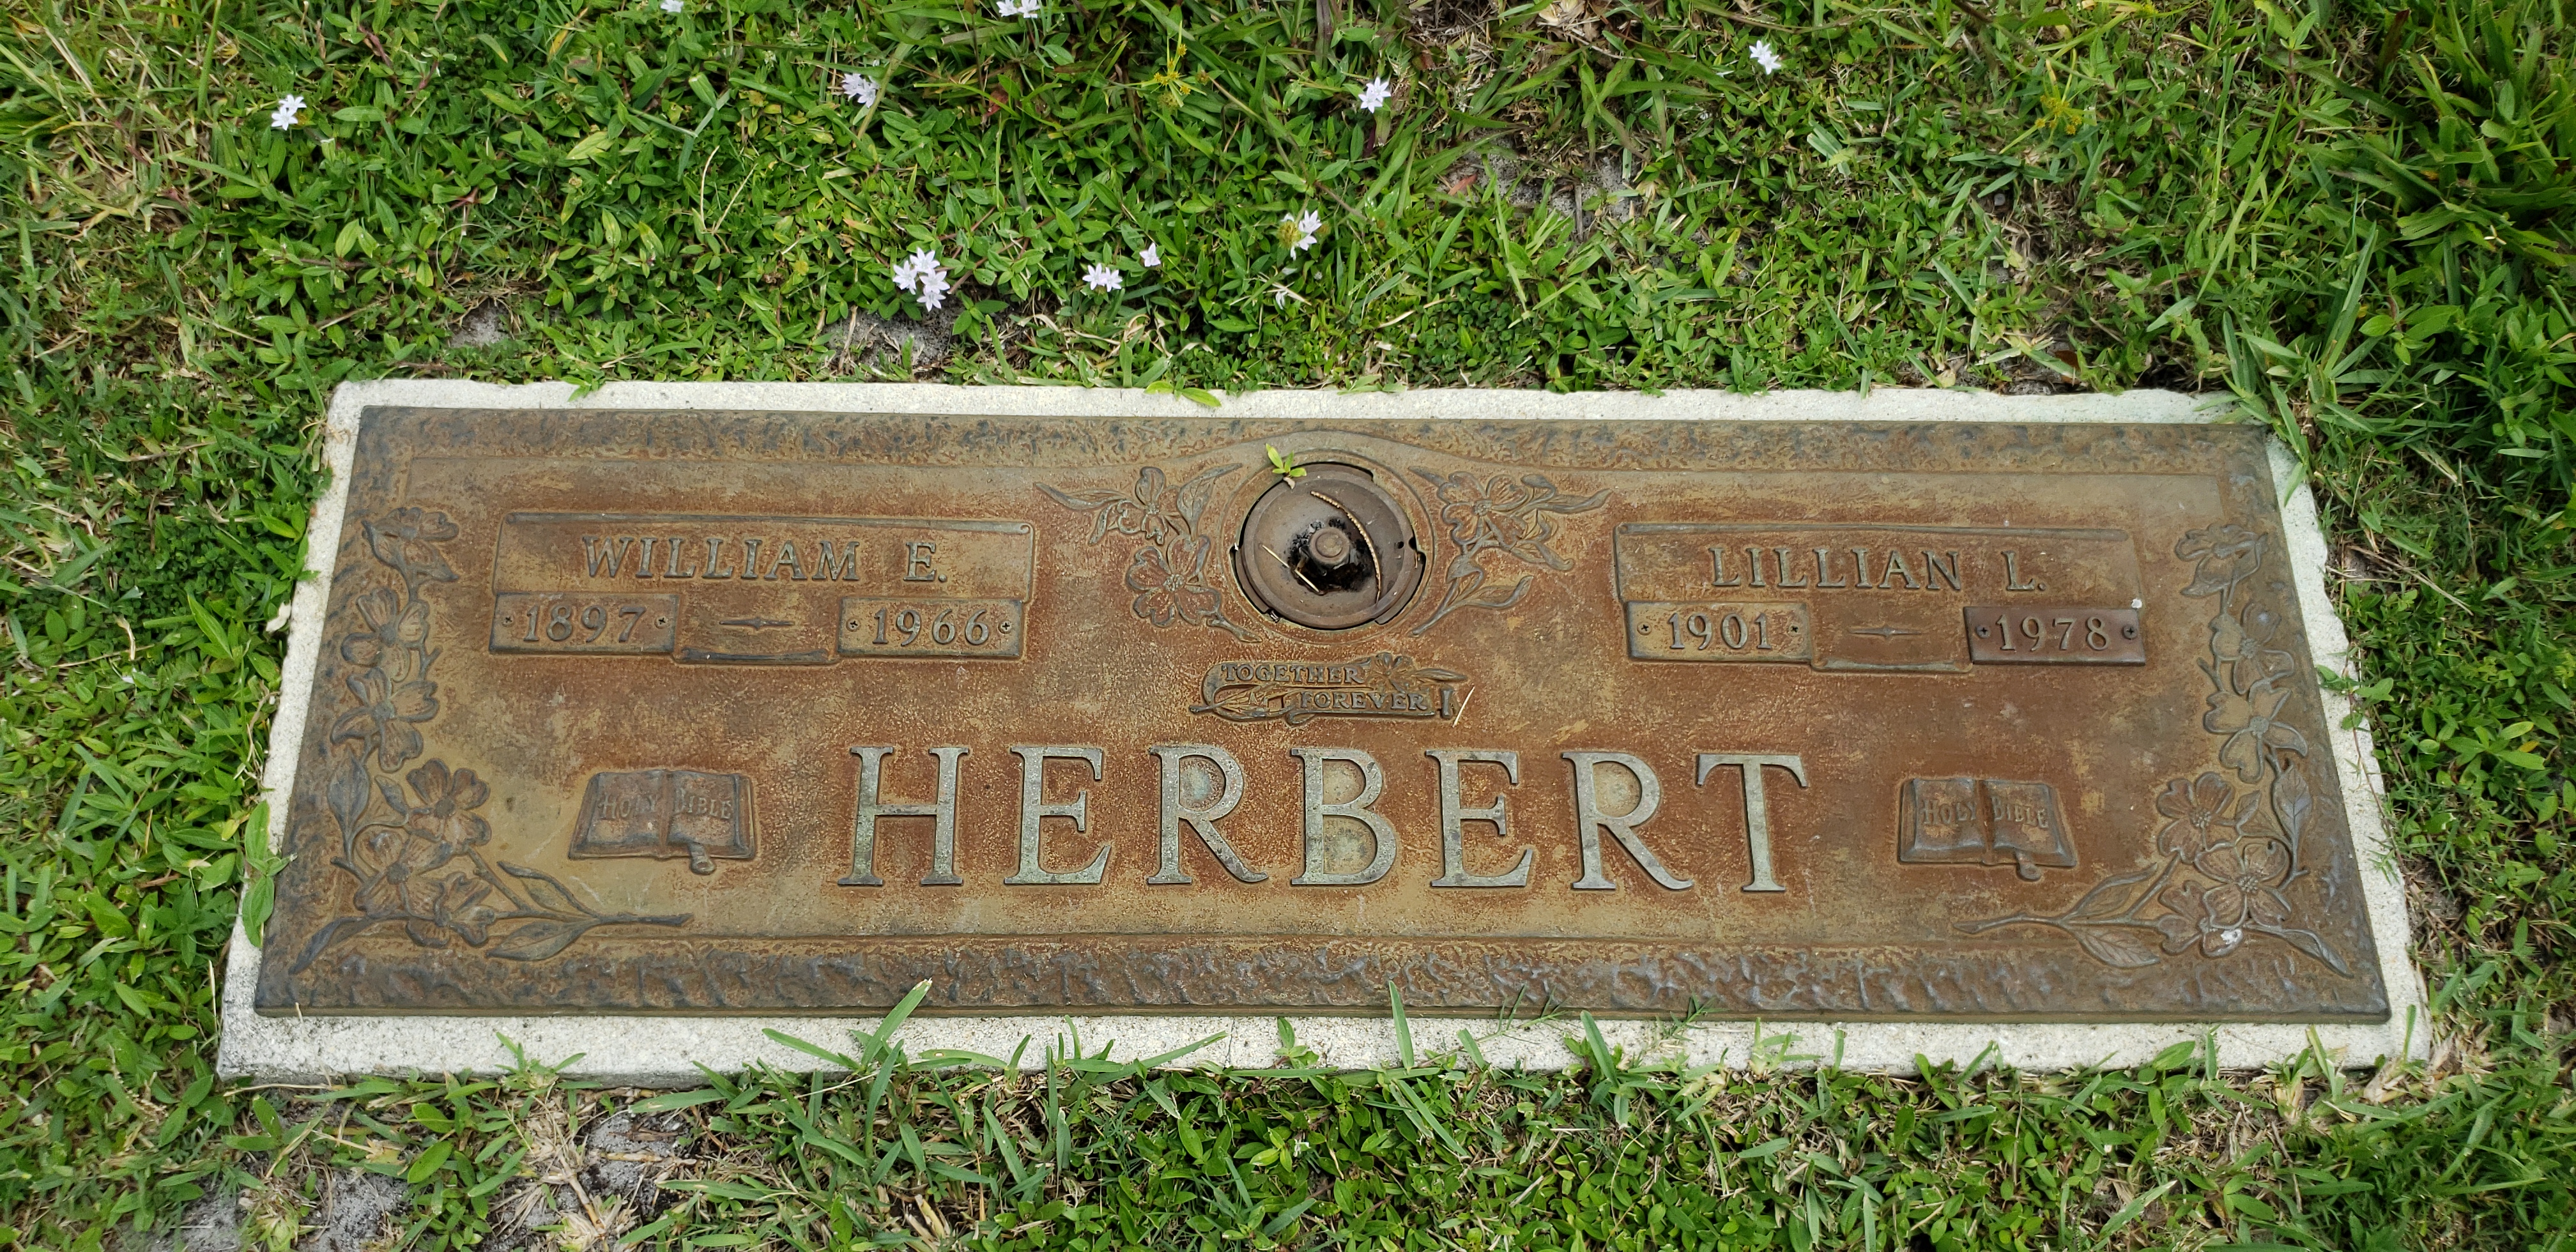 William E Herbert